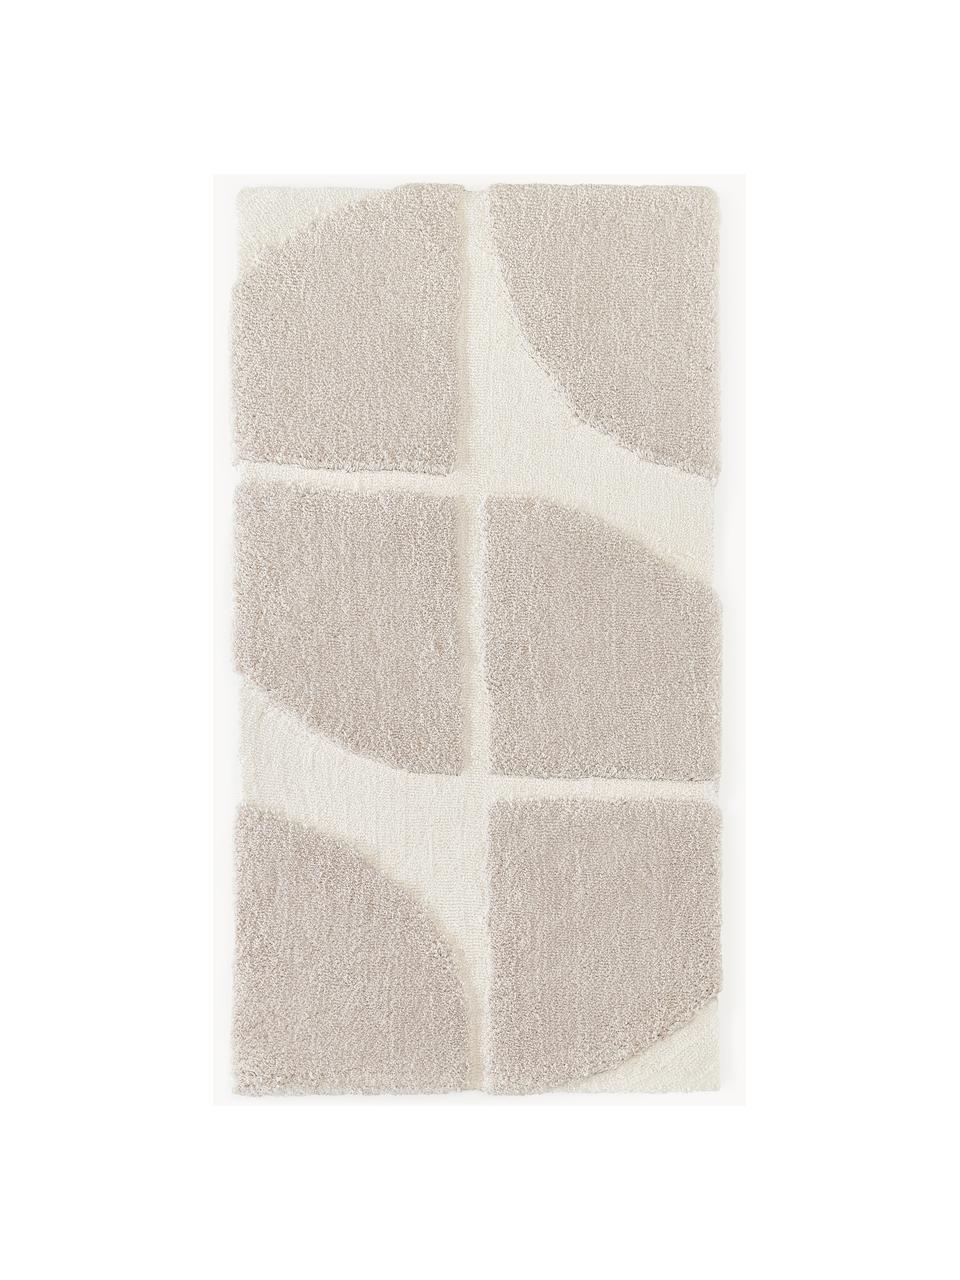 Načechraný koberec s vysokým vlasem a strukturovaným povrchem Jade, Béžová, krémově bílá, Š 120 cm, D 180 cm (velikost S)